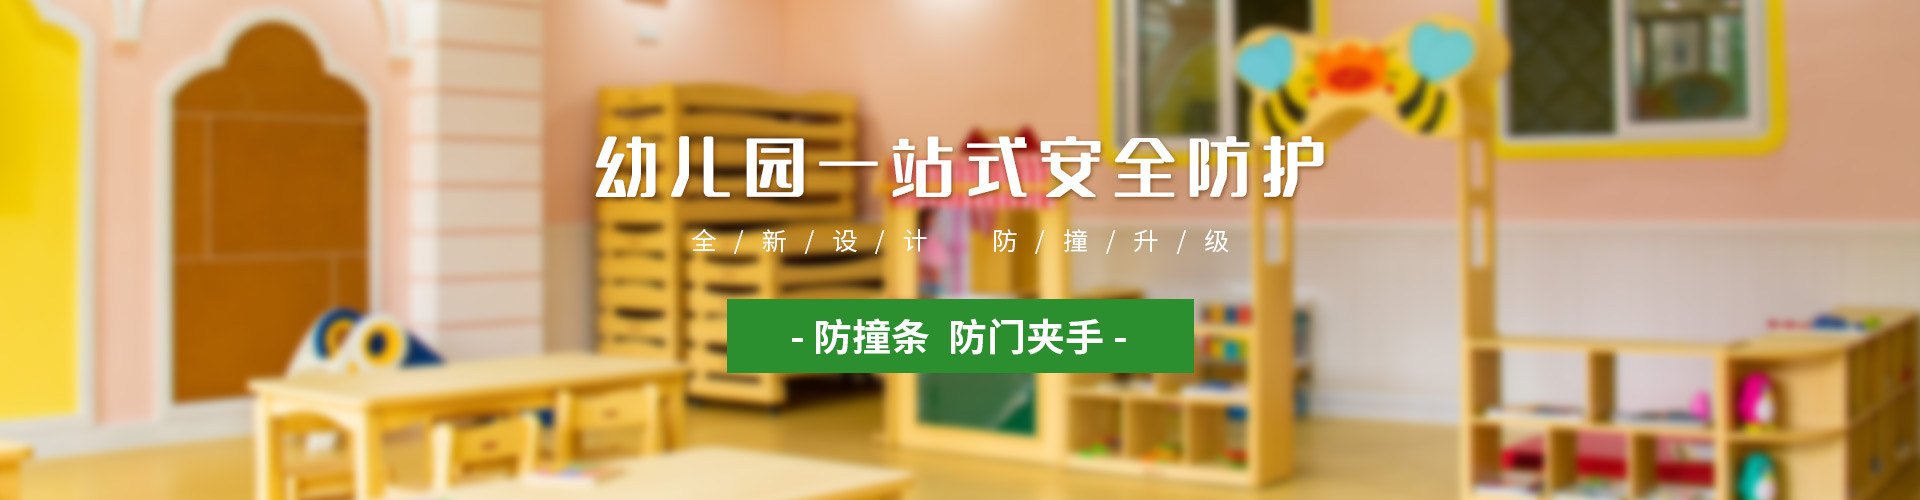 深圳市宝安区地面幼儿园防滑剂 幼儿园洗手间防滑